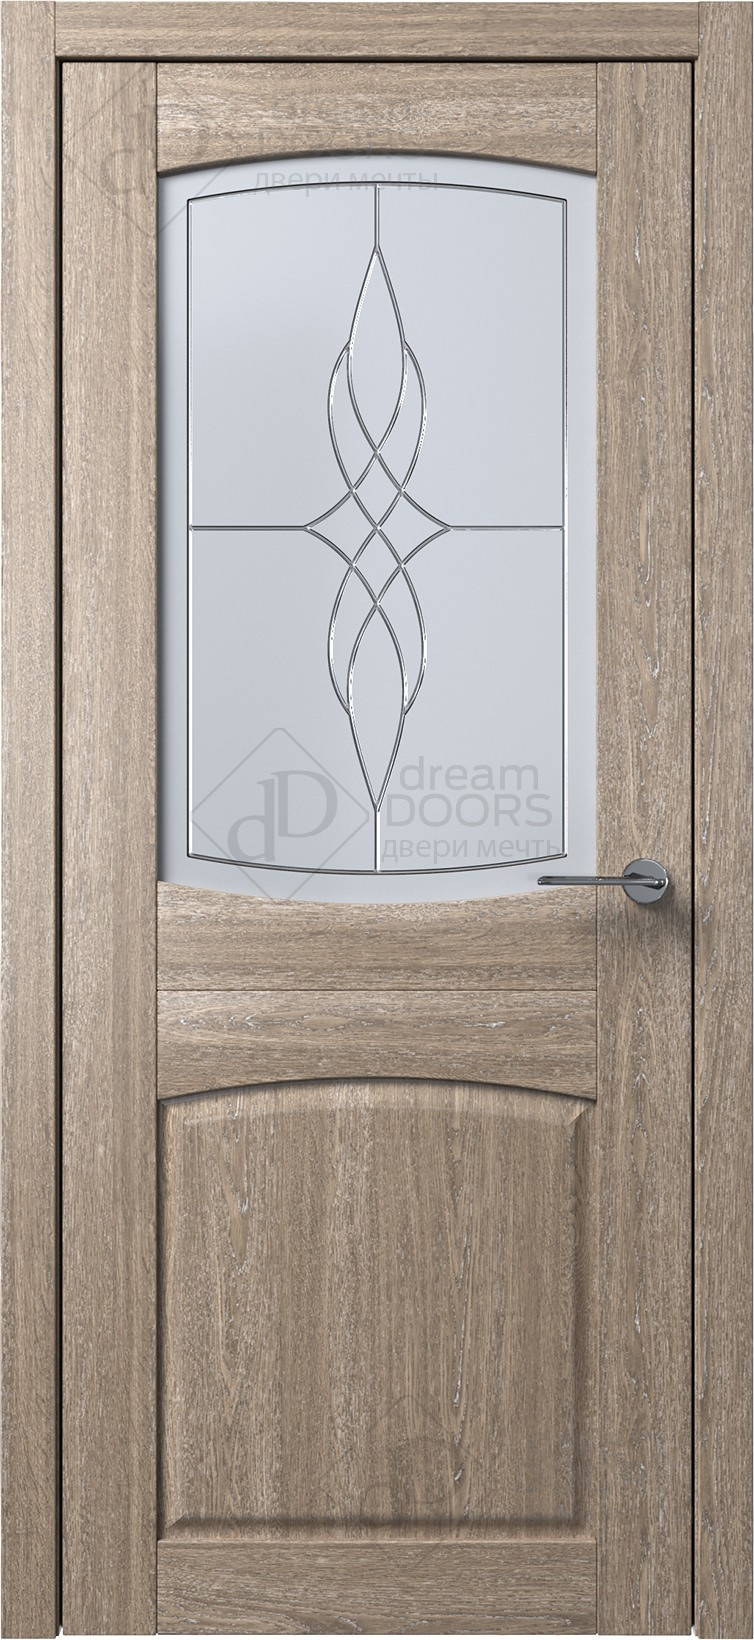 Dream Doors Межкомнатная дверь B4-4, арт. 5558 - фото №1